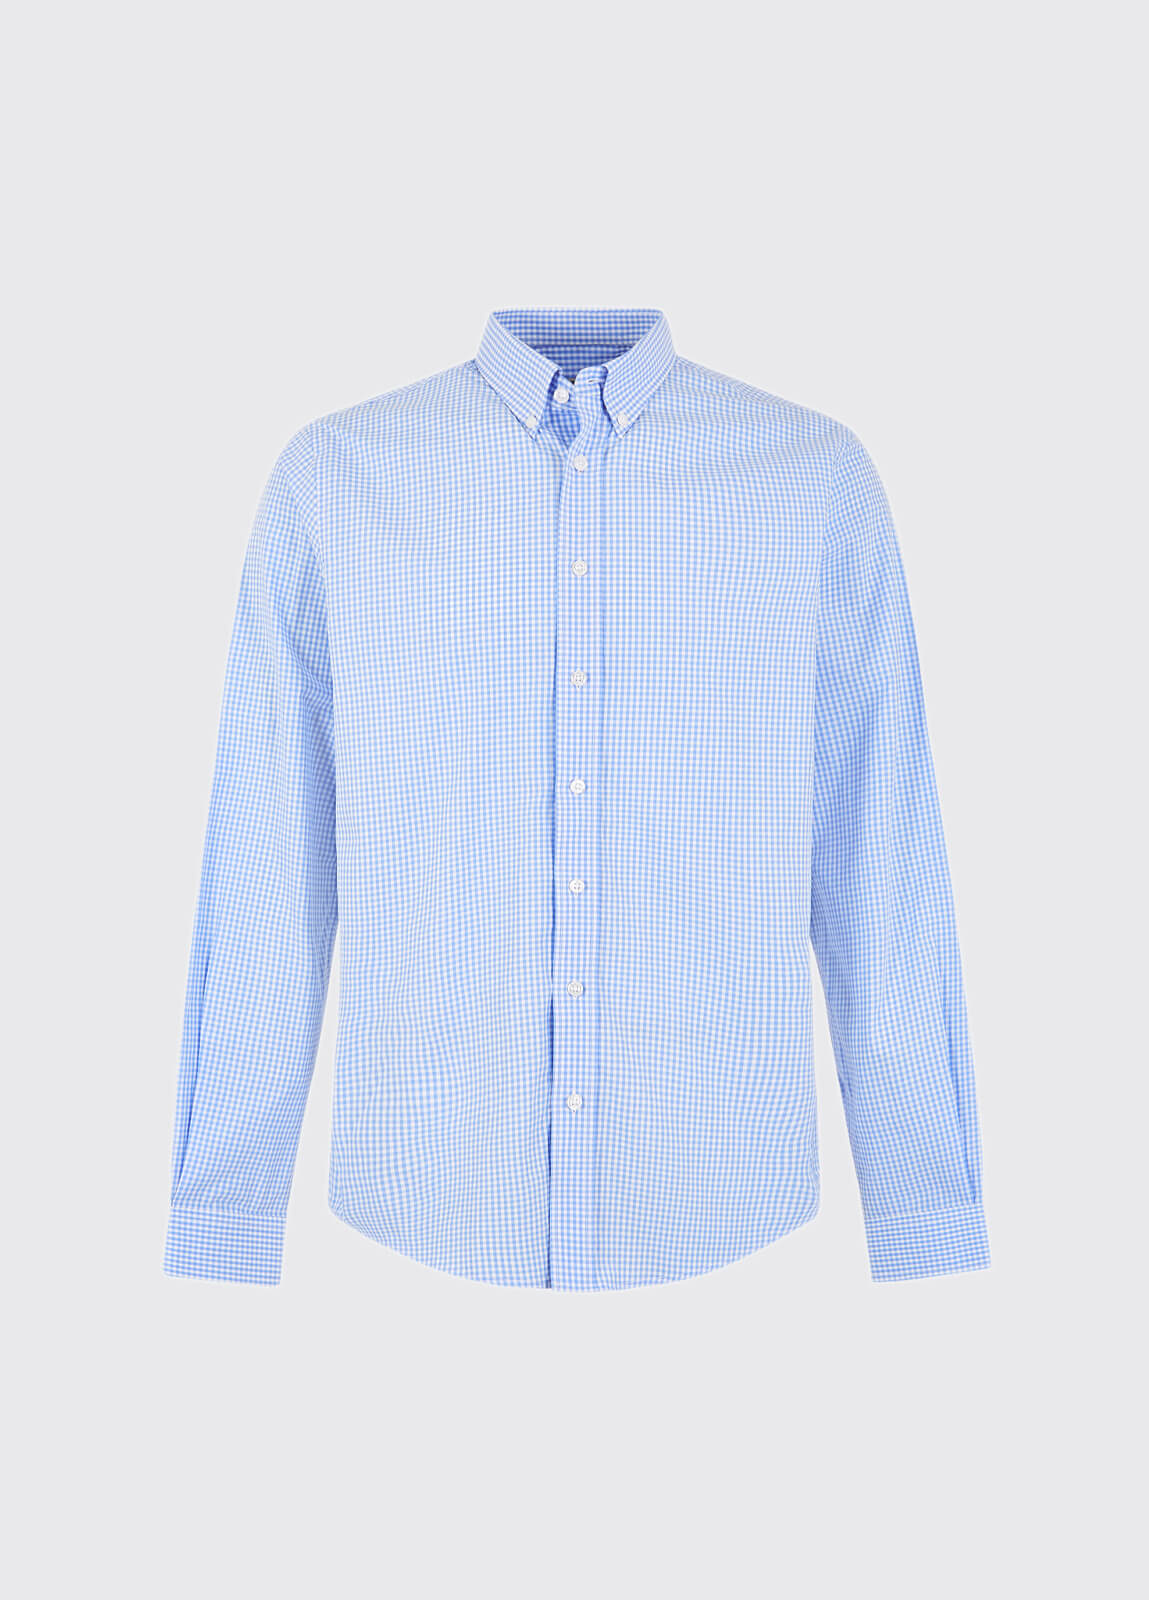 Longwood Shirt - Blue